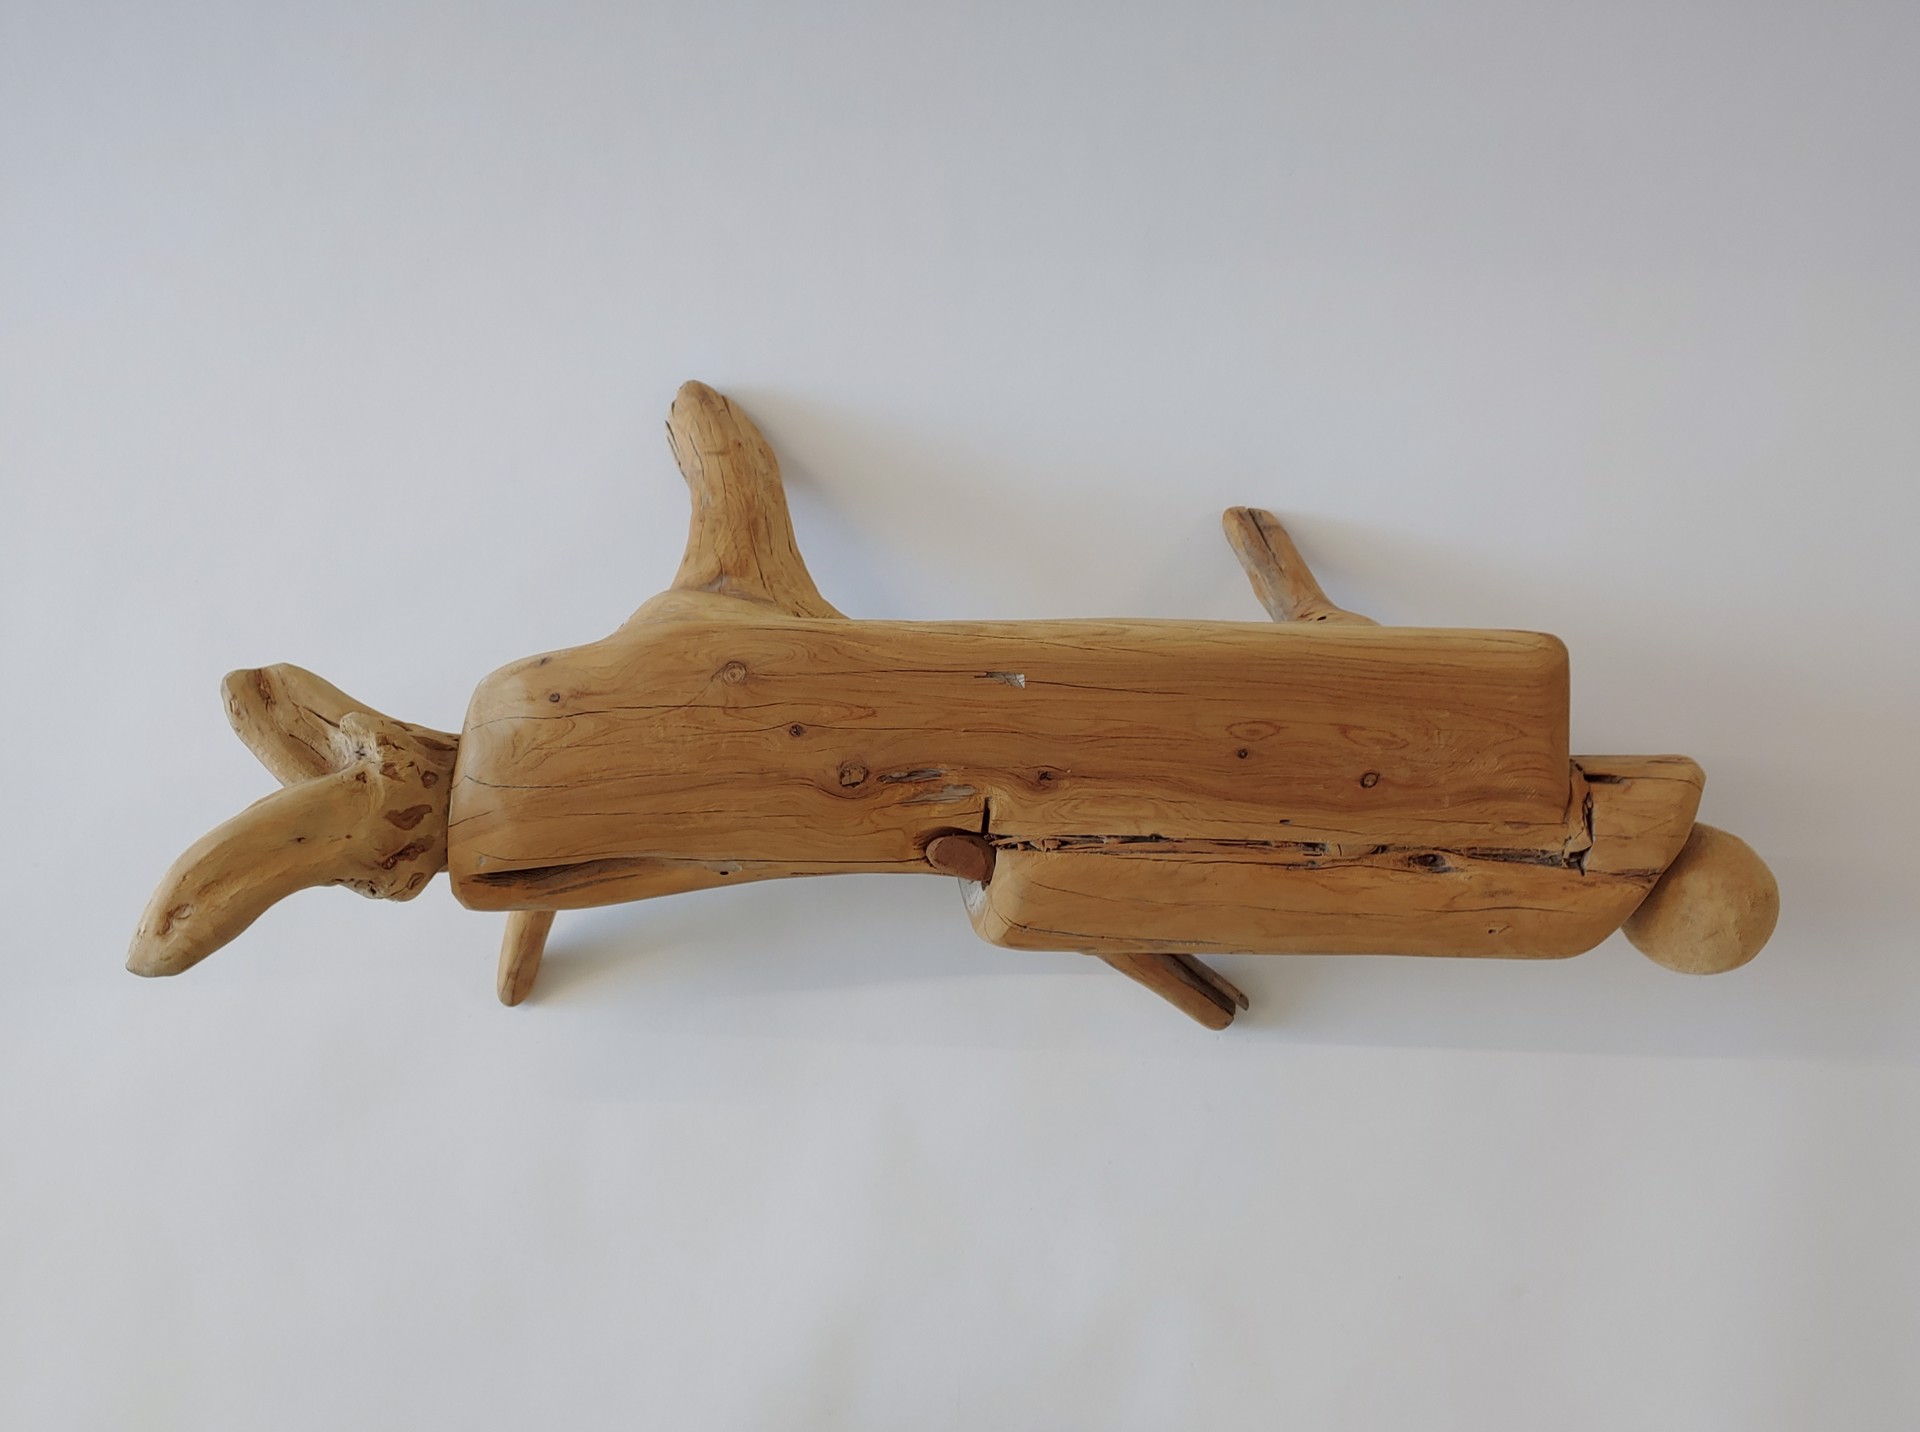 Dog - Wood Sculpture by David Amdur